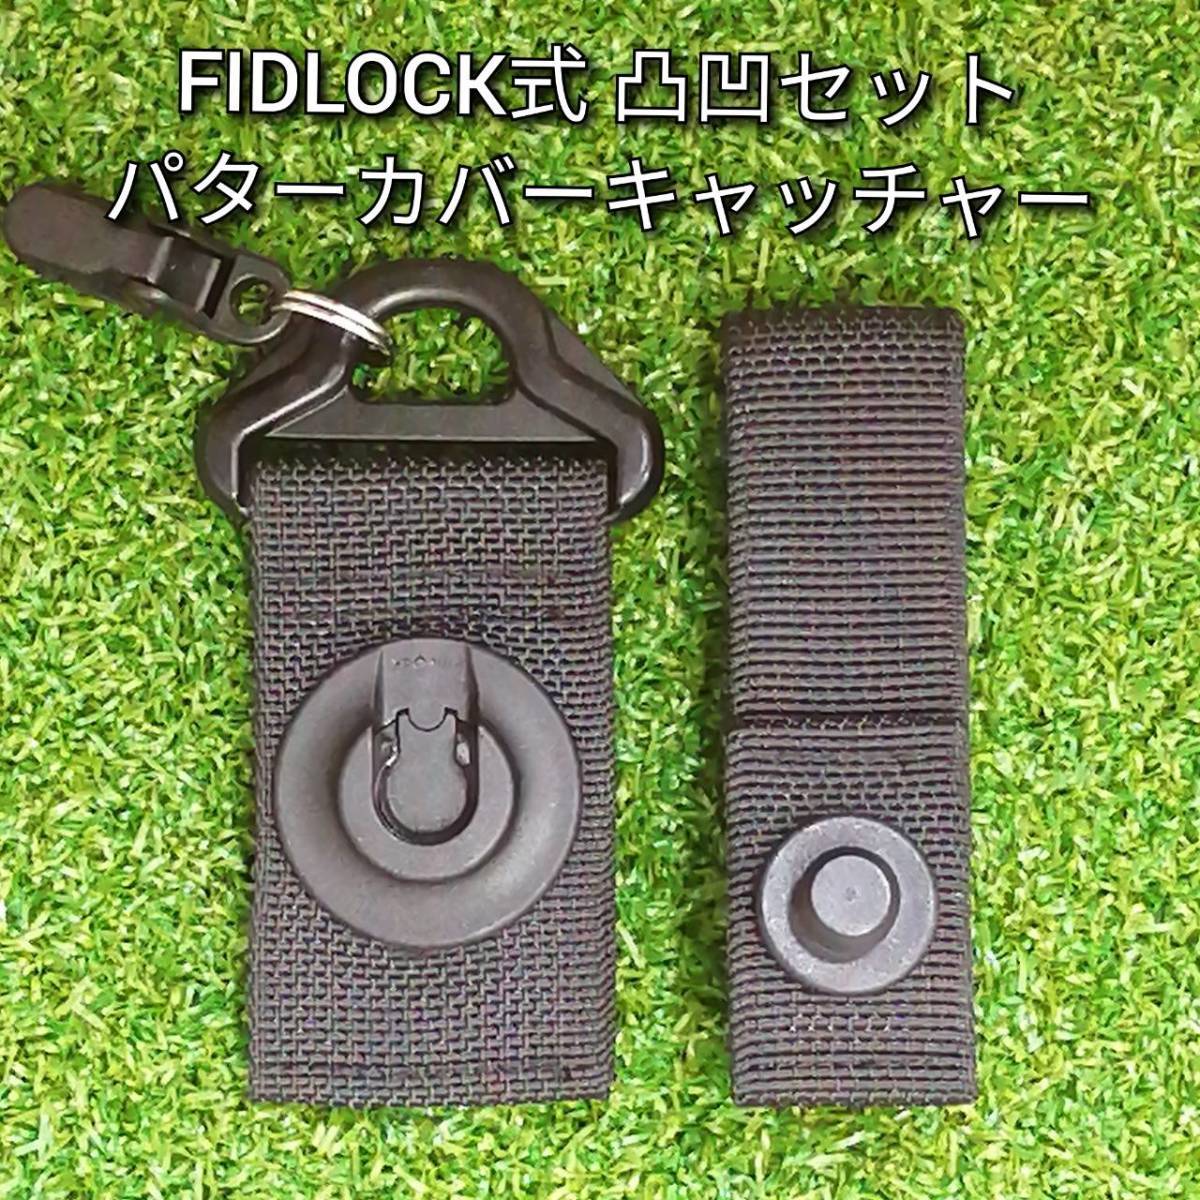 FIDLOCK凸凹セット ブリーフィング互換 パターカバーキャッチャーの画像1